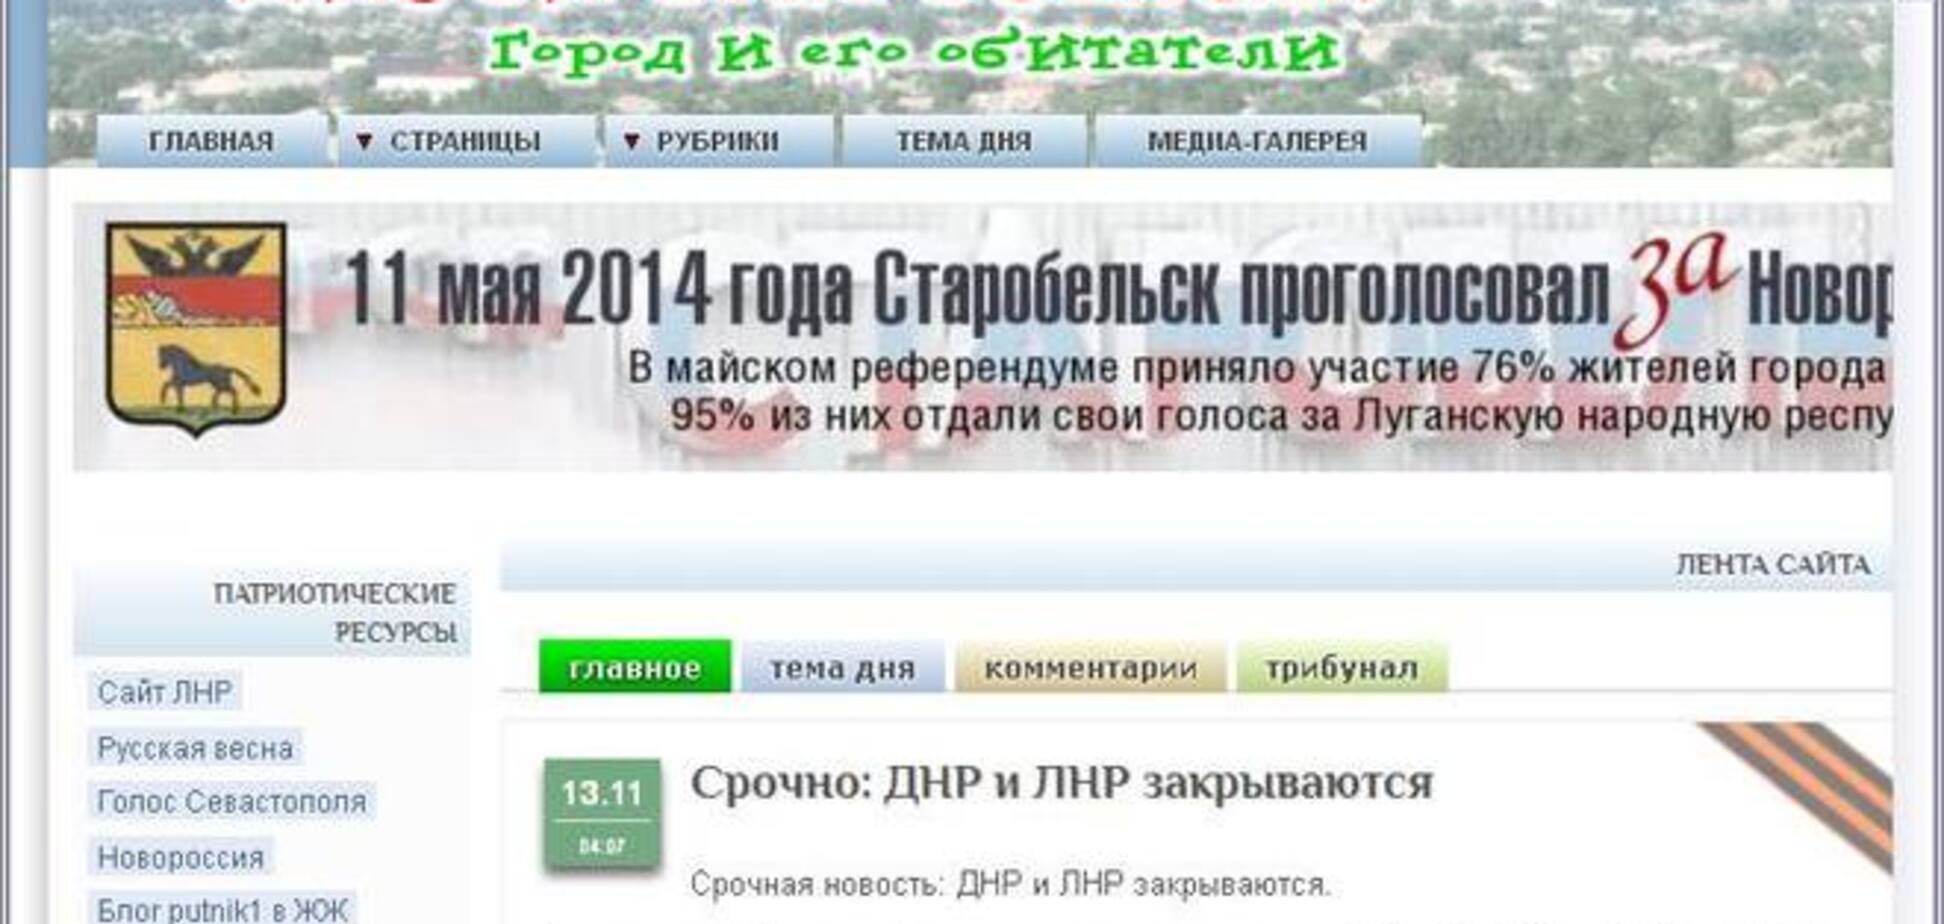 Українські кібервойска допомогли терористам 'закрити' ДНР 'і ЛНР'